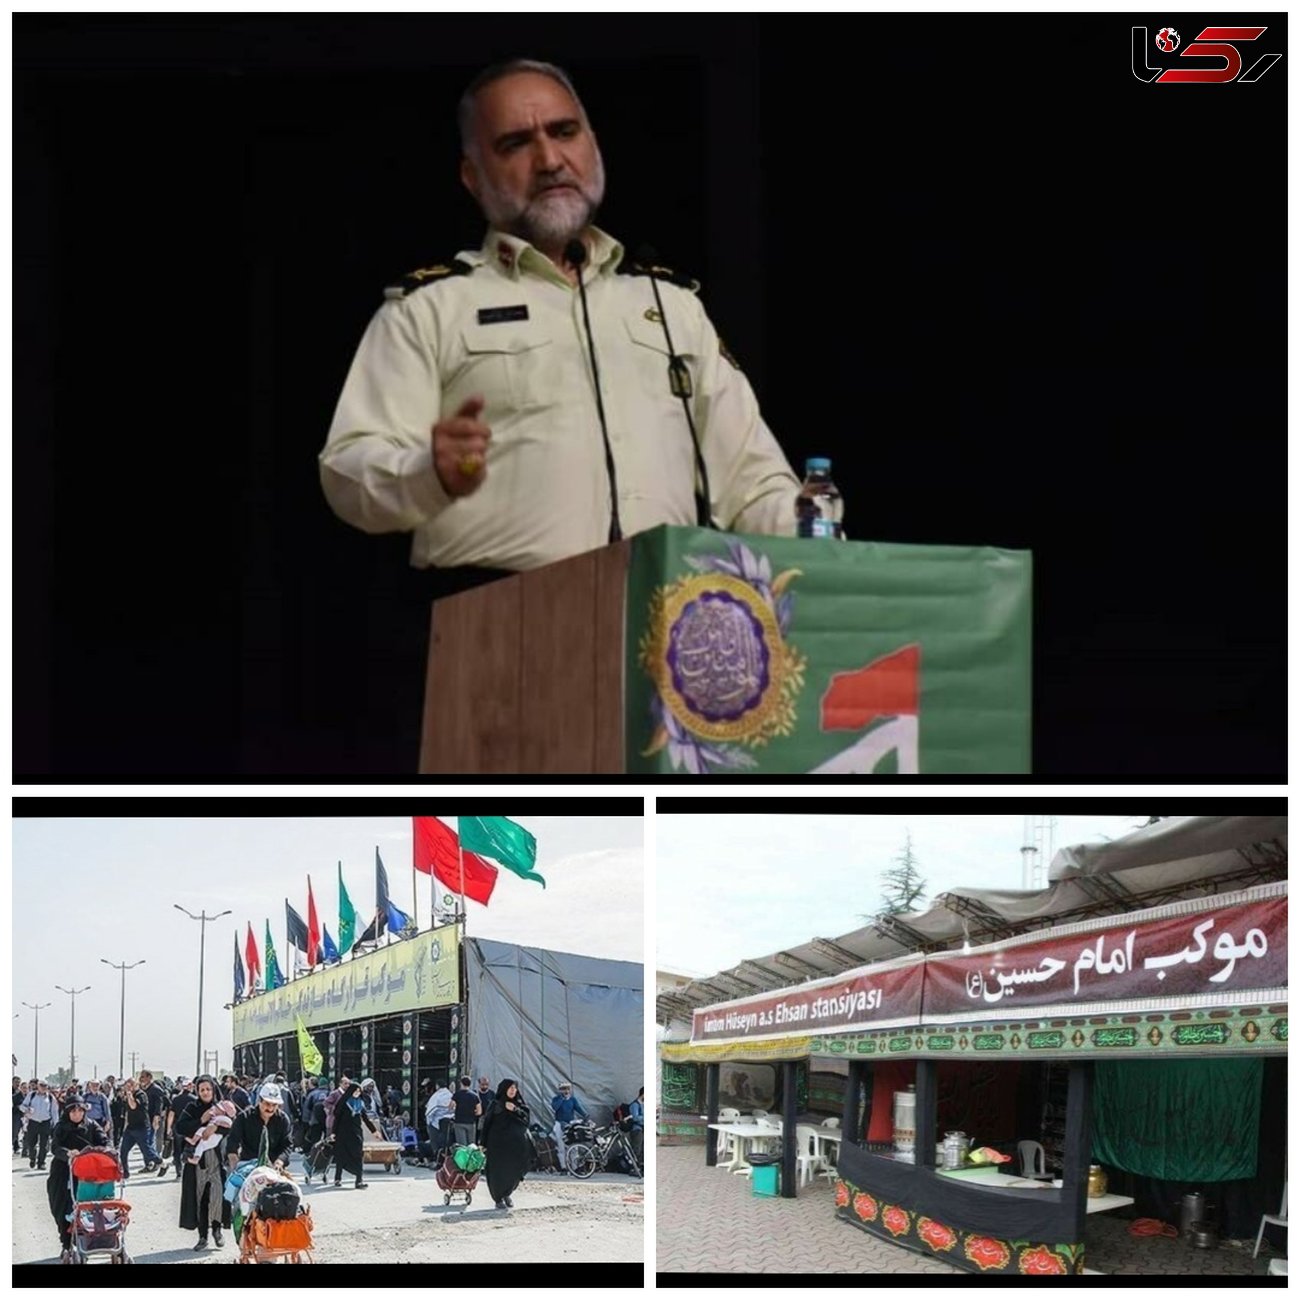 طرح ویژه پلیس اصفهان برای امنیت زائران اربعین / مردم موارد مشکوک را گزارش کنند